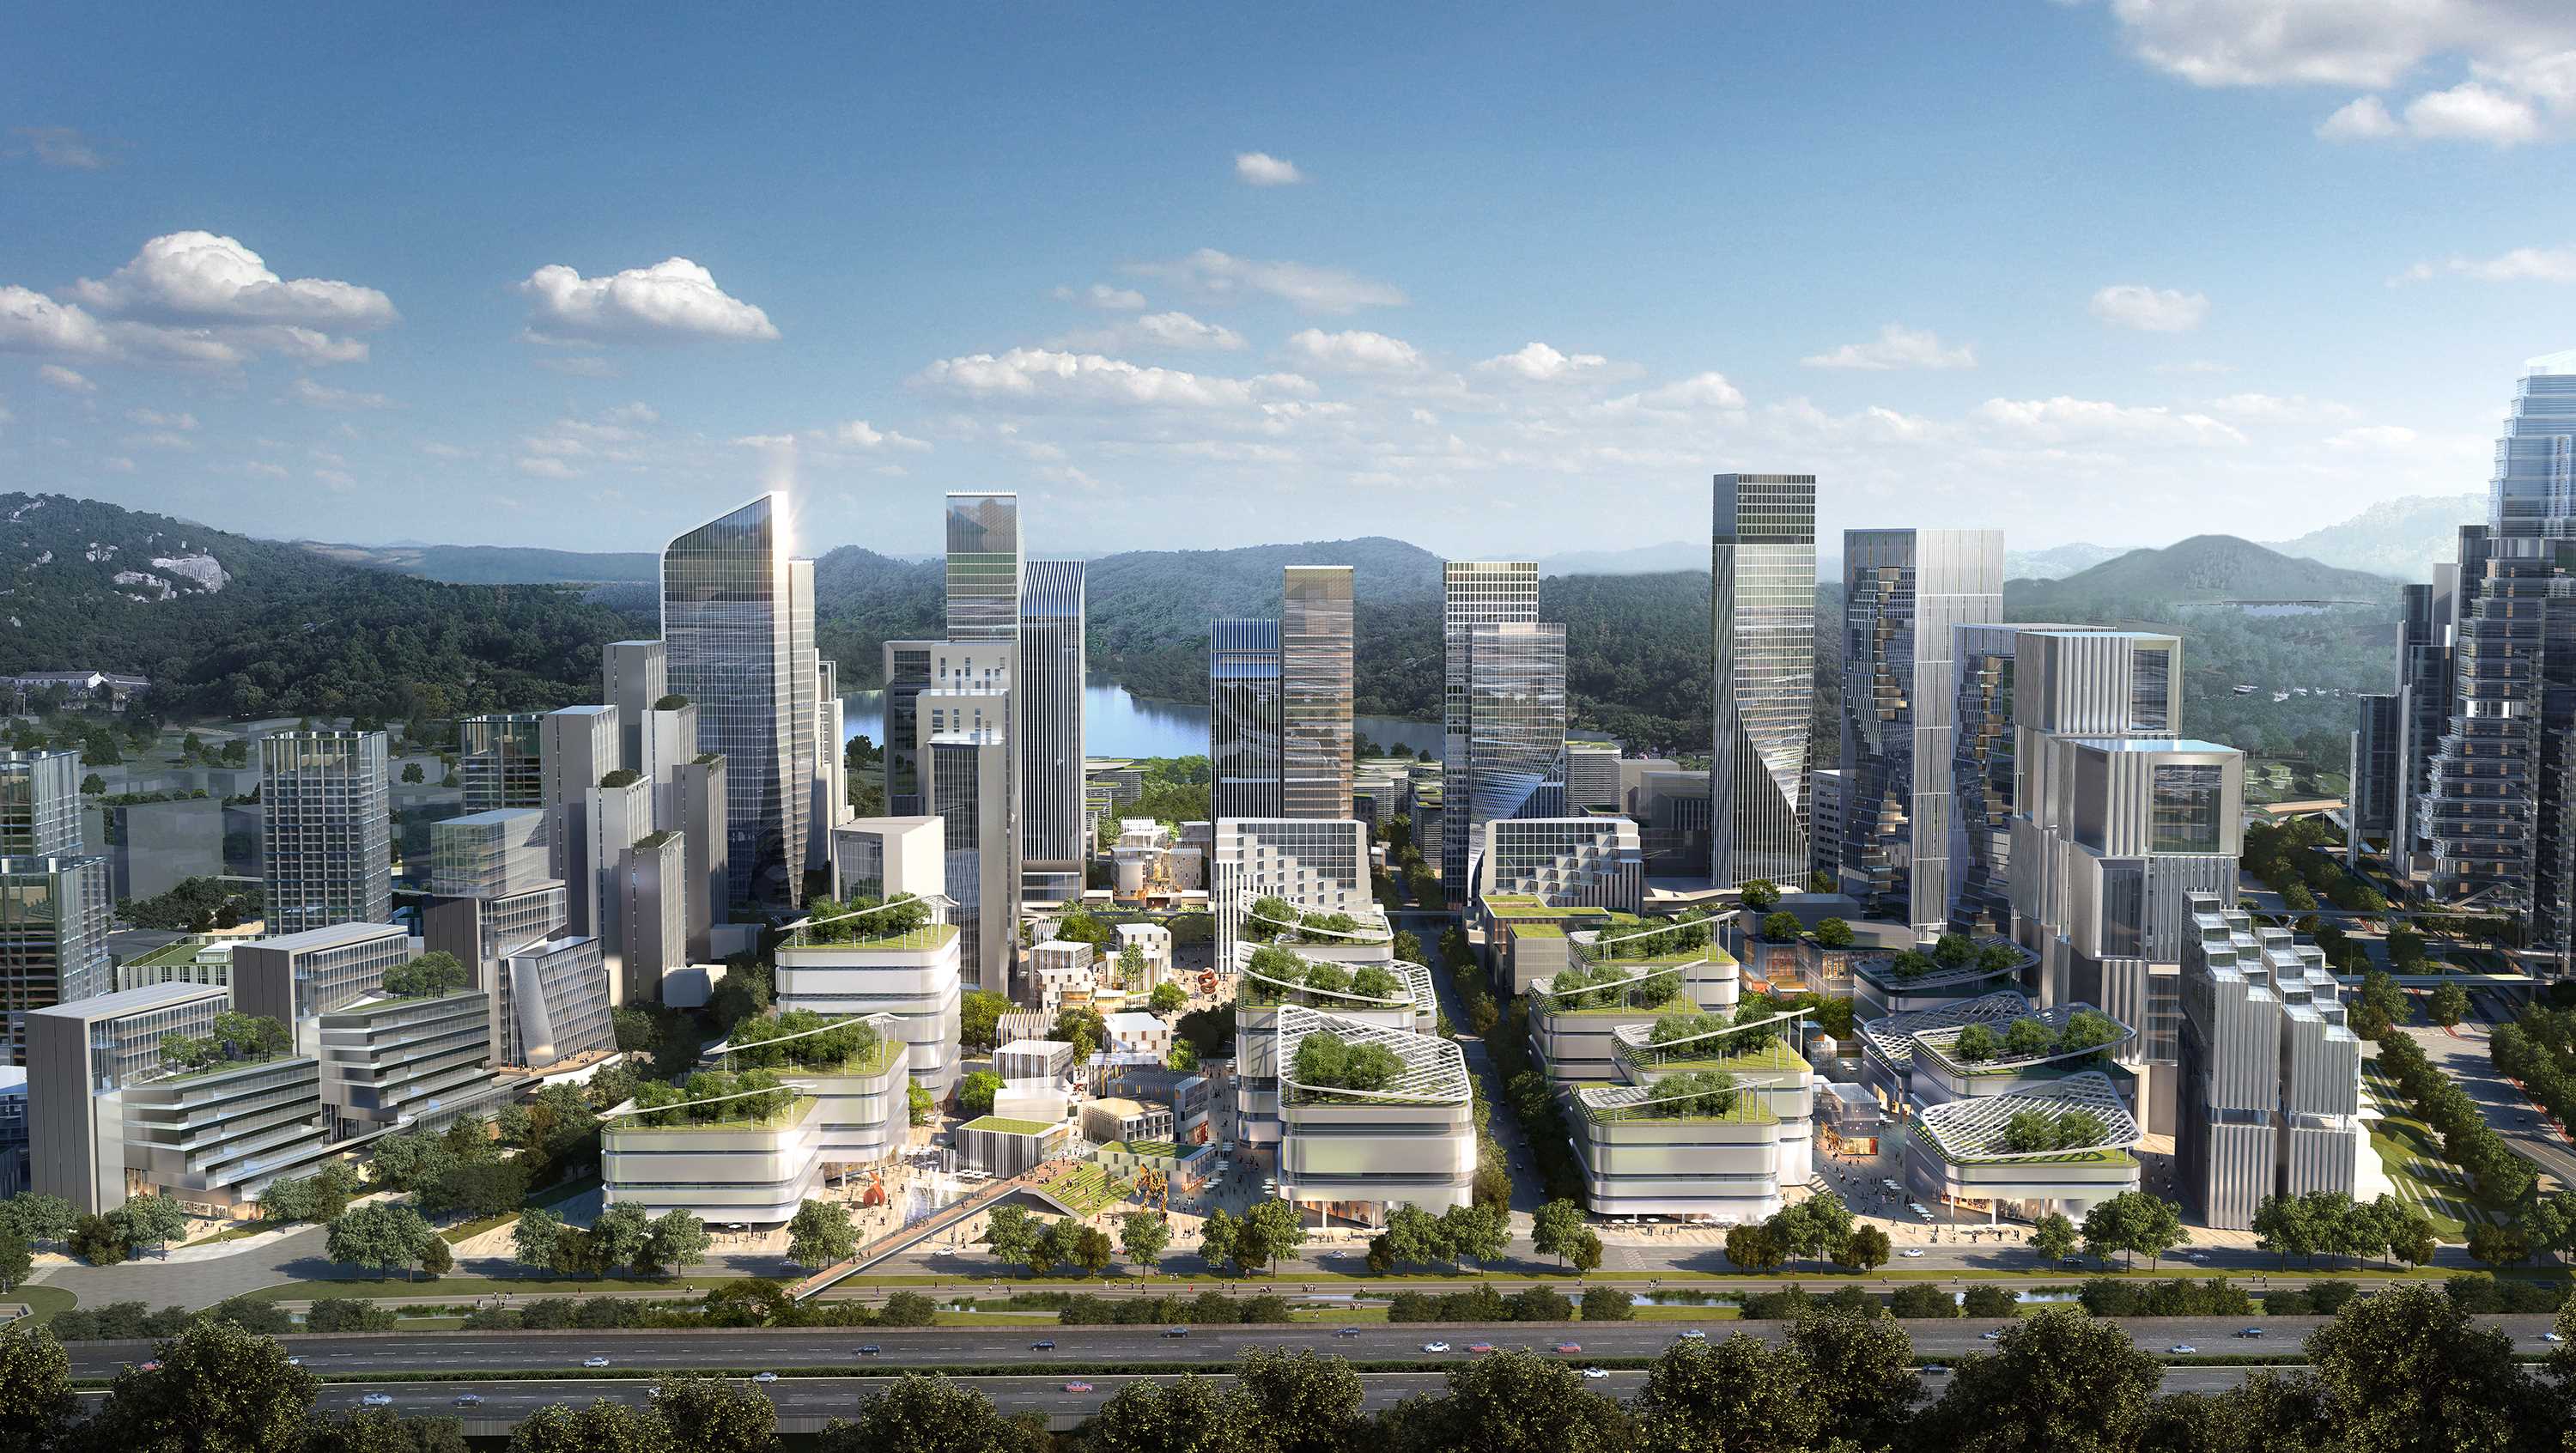 深圳新桥智城城市设计入选图片-13智产转化单元